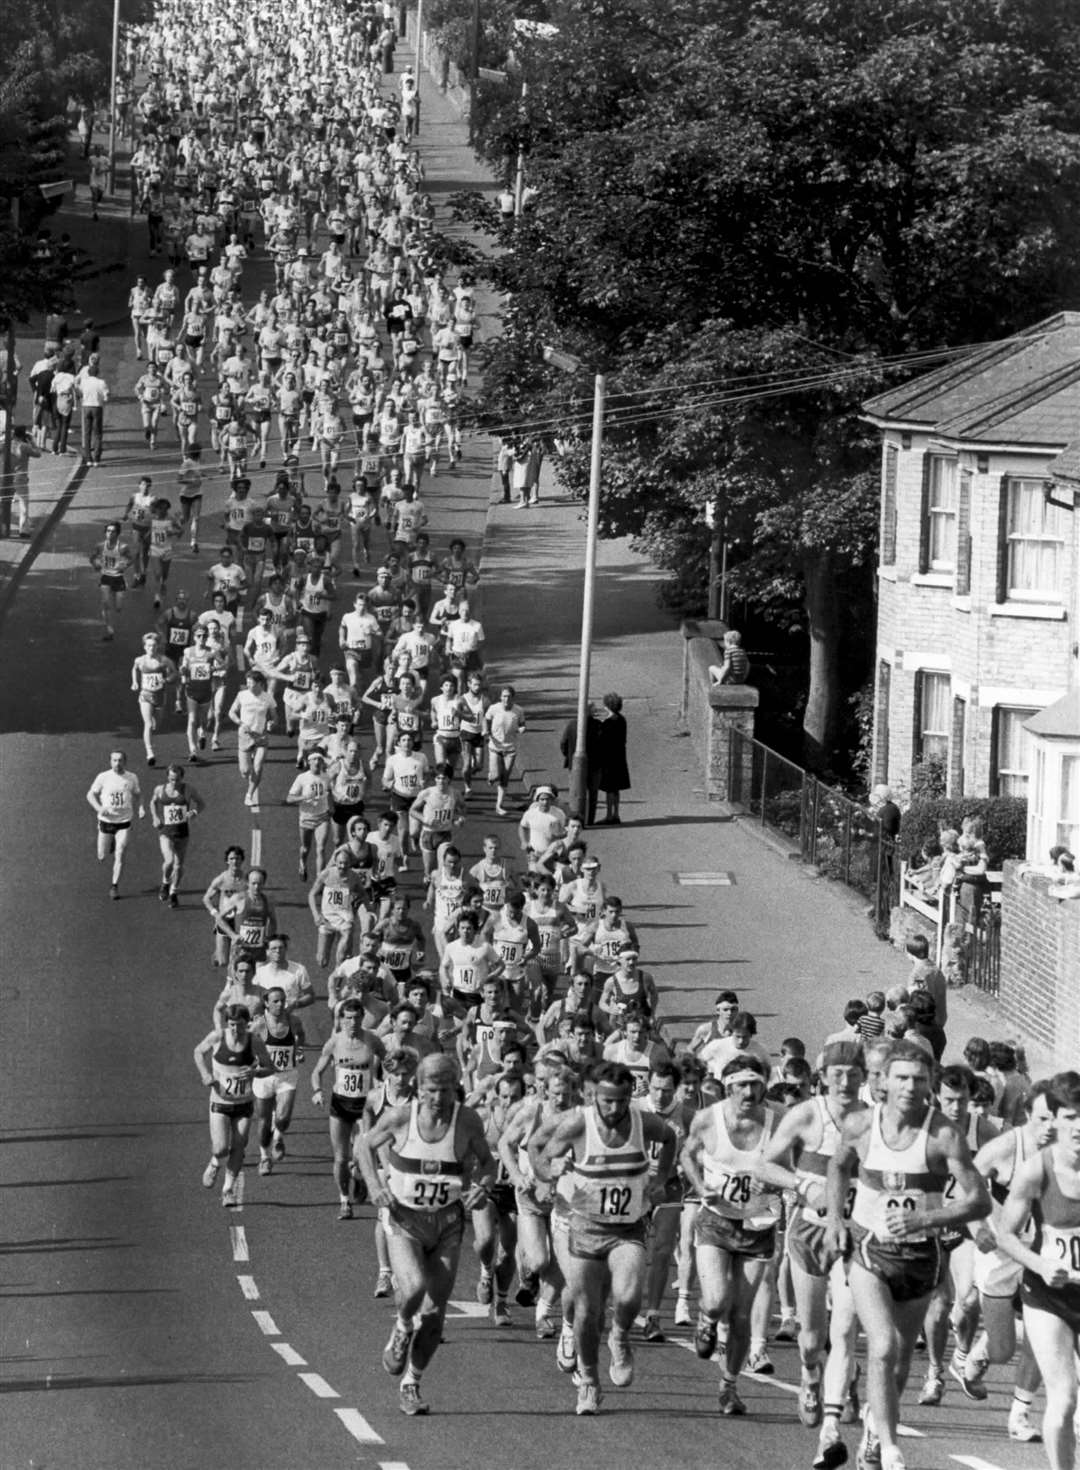 Maidstone's first marathon was held in June 1983